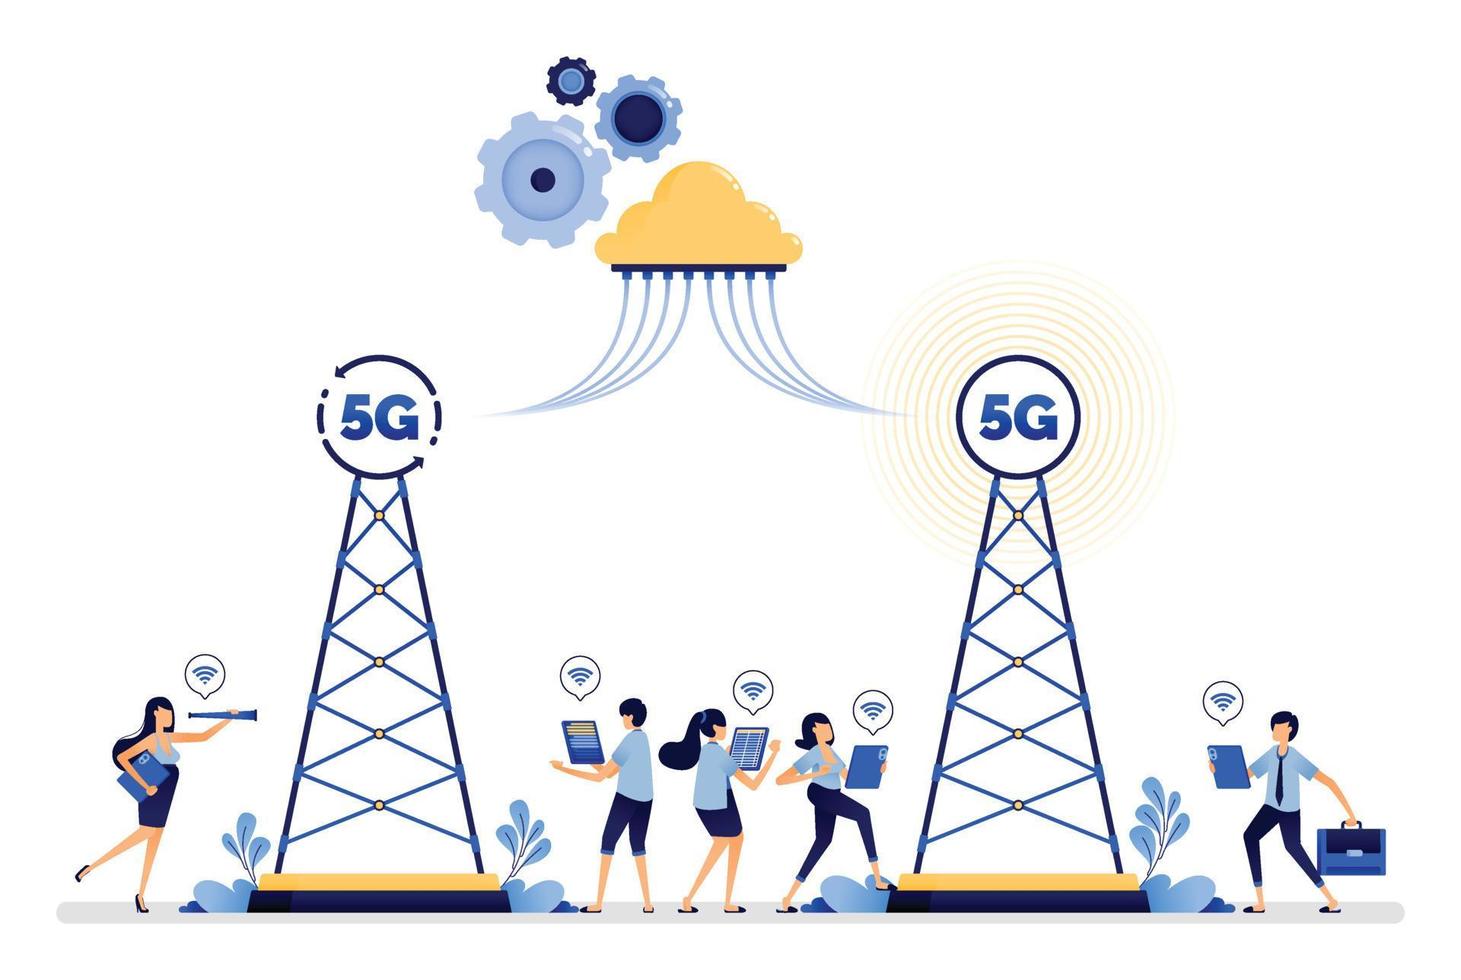 il design dell'illustrazione della torre di comunicazione installata Il sistema Internet 5g comunica più facilmente con il cloud e la rete wireless. il vettore può essere utilizzato per Web, sito Web, poster, app mobili, annunci, volantini